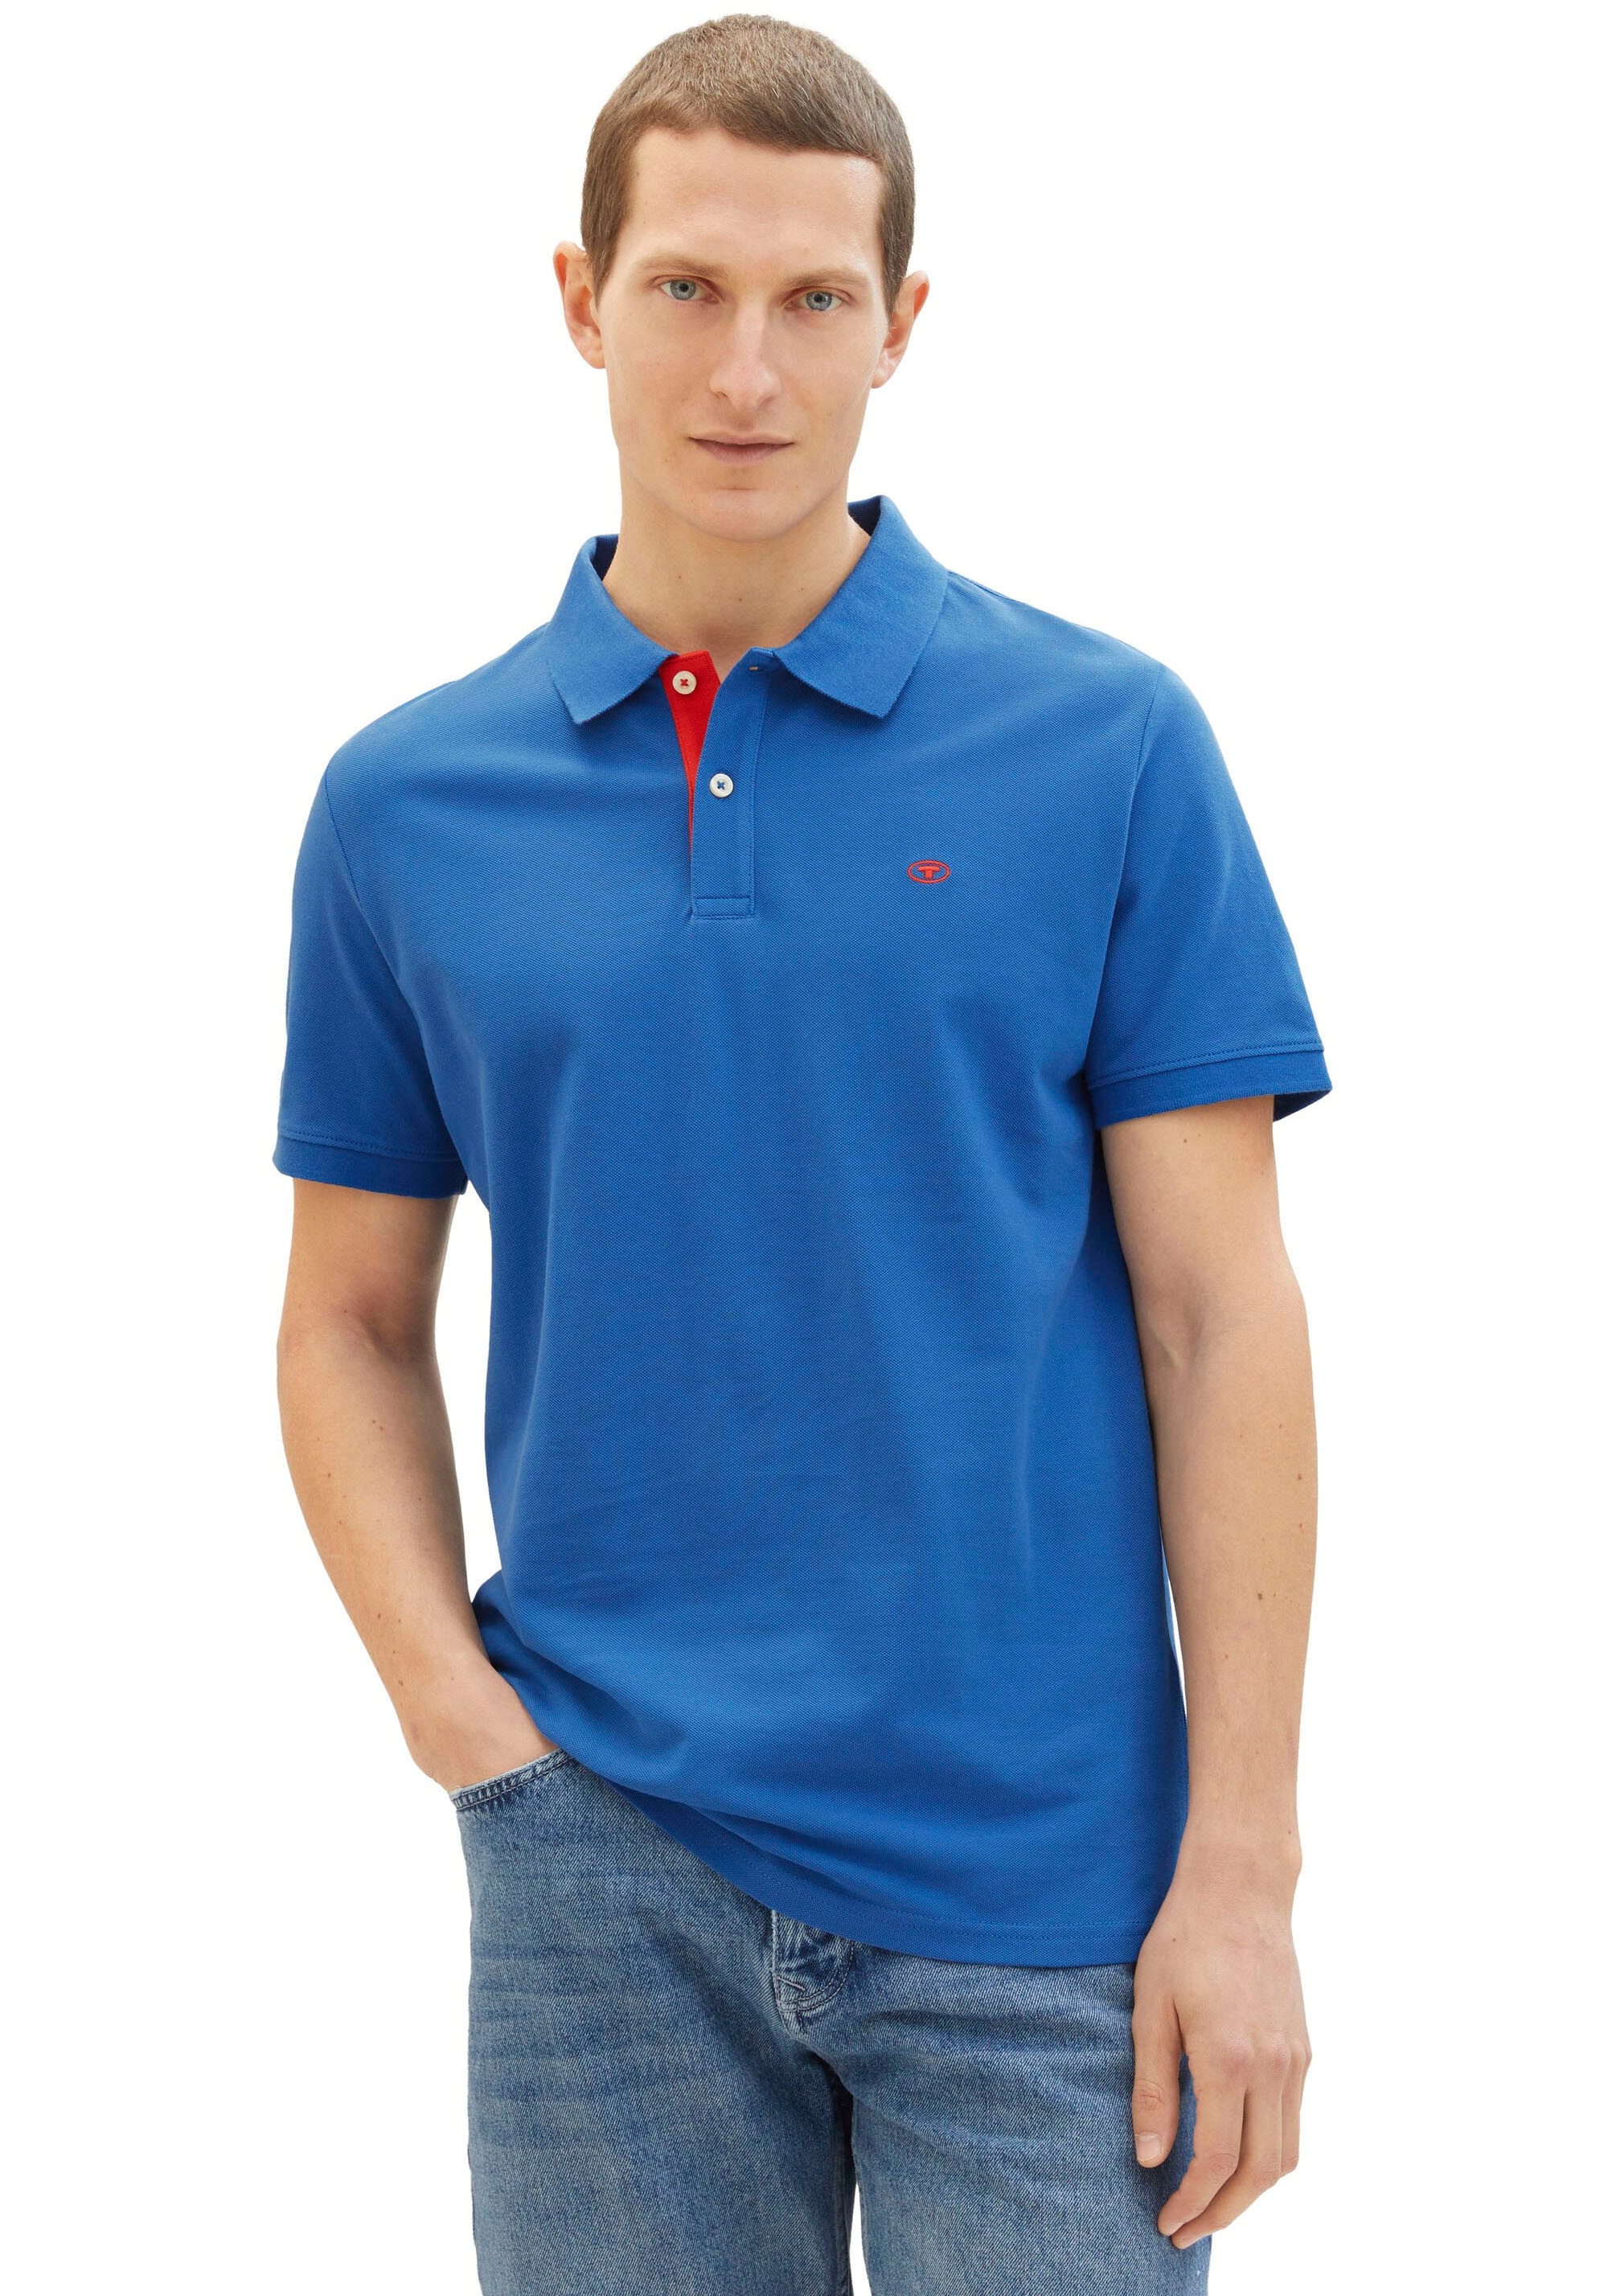 TOM TAILOR Poloshirt, mit kontrastfarbener Knopfleiste und kleinem Logo  online bestellen